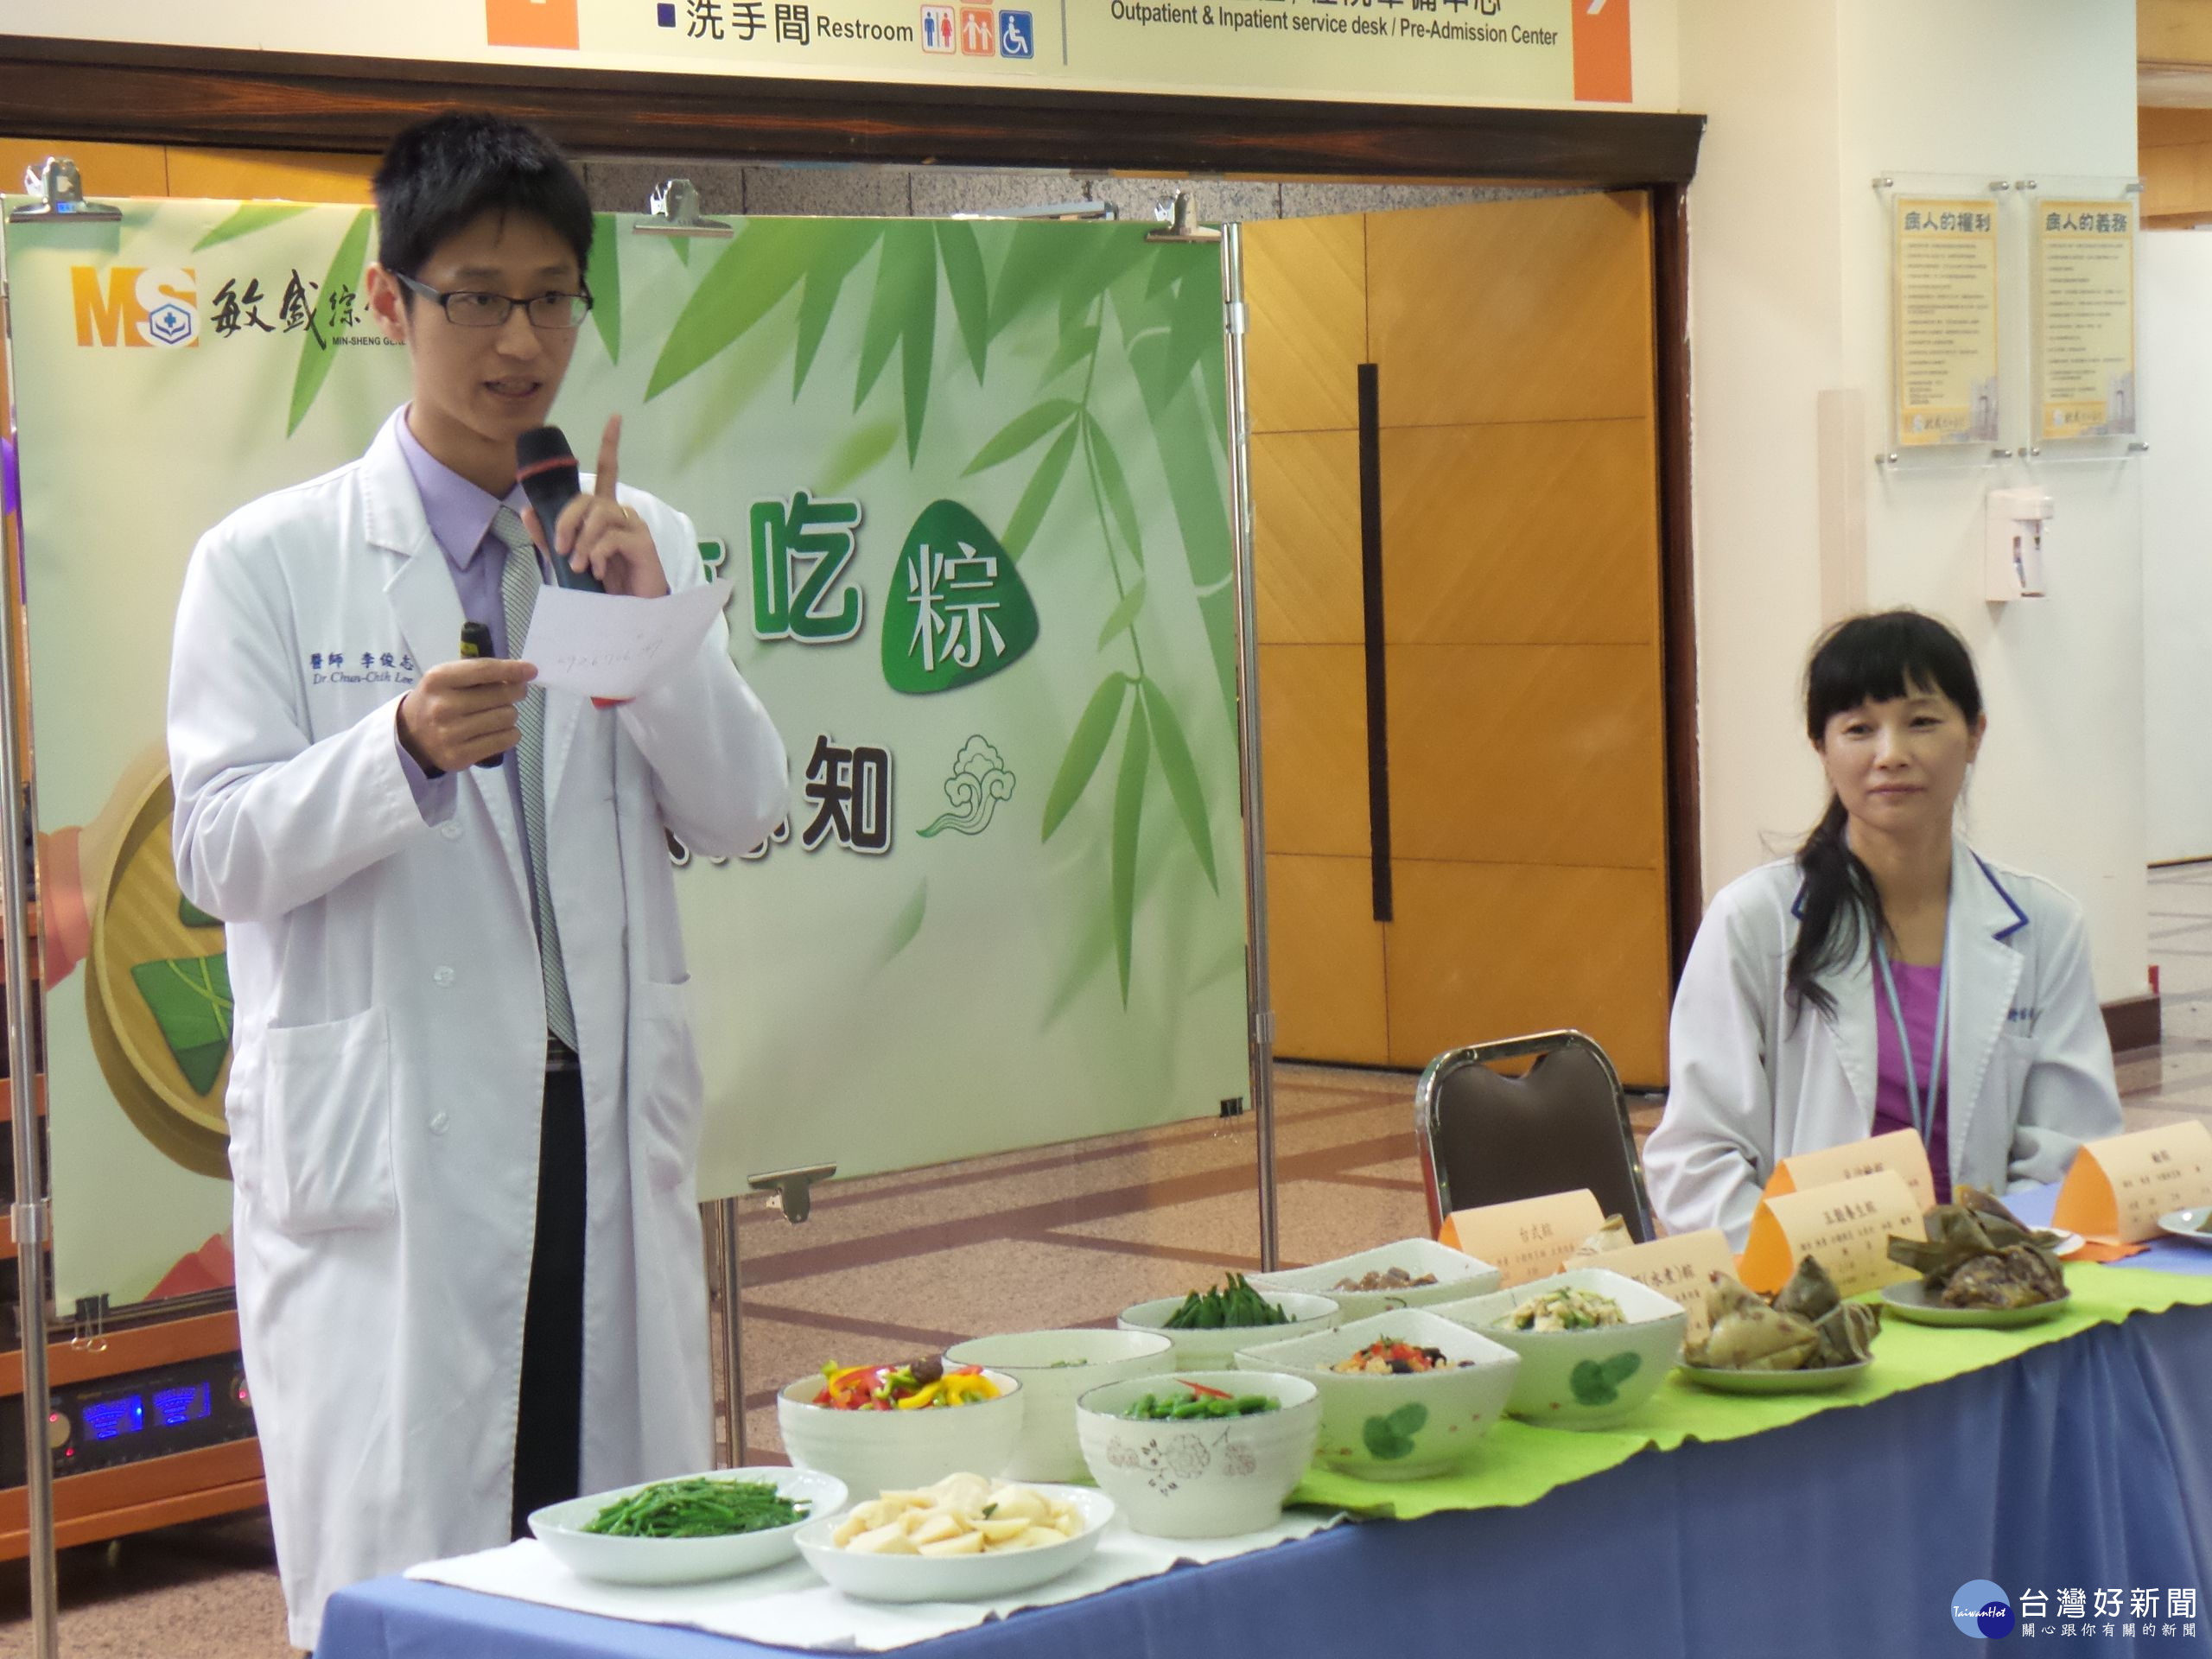 李俊志醫師表示：先了解端午節常見食物對血糖的影響，才能度過一個美味又健康的端午佳節喔。